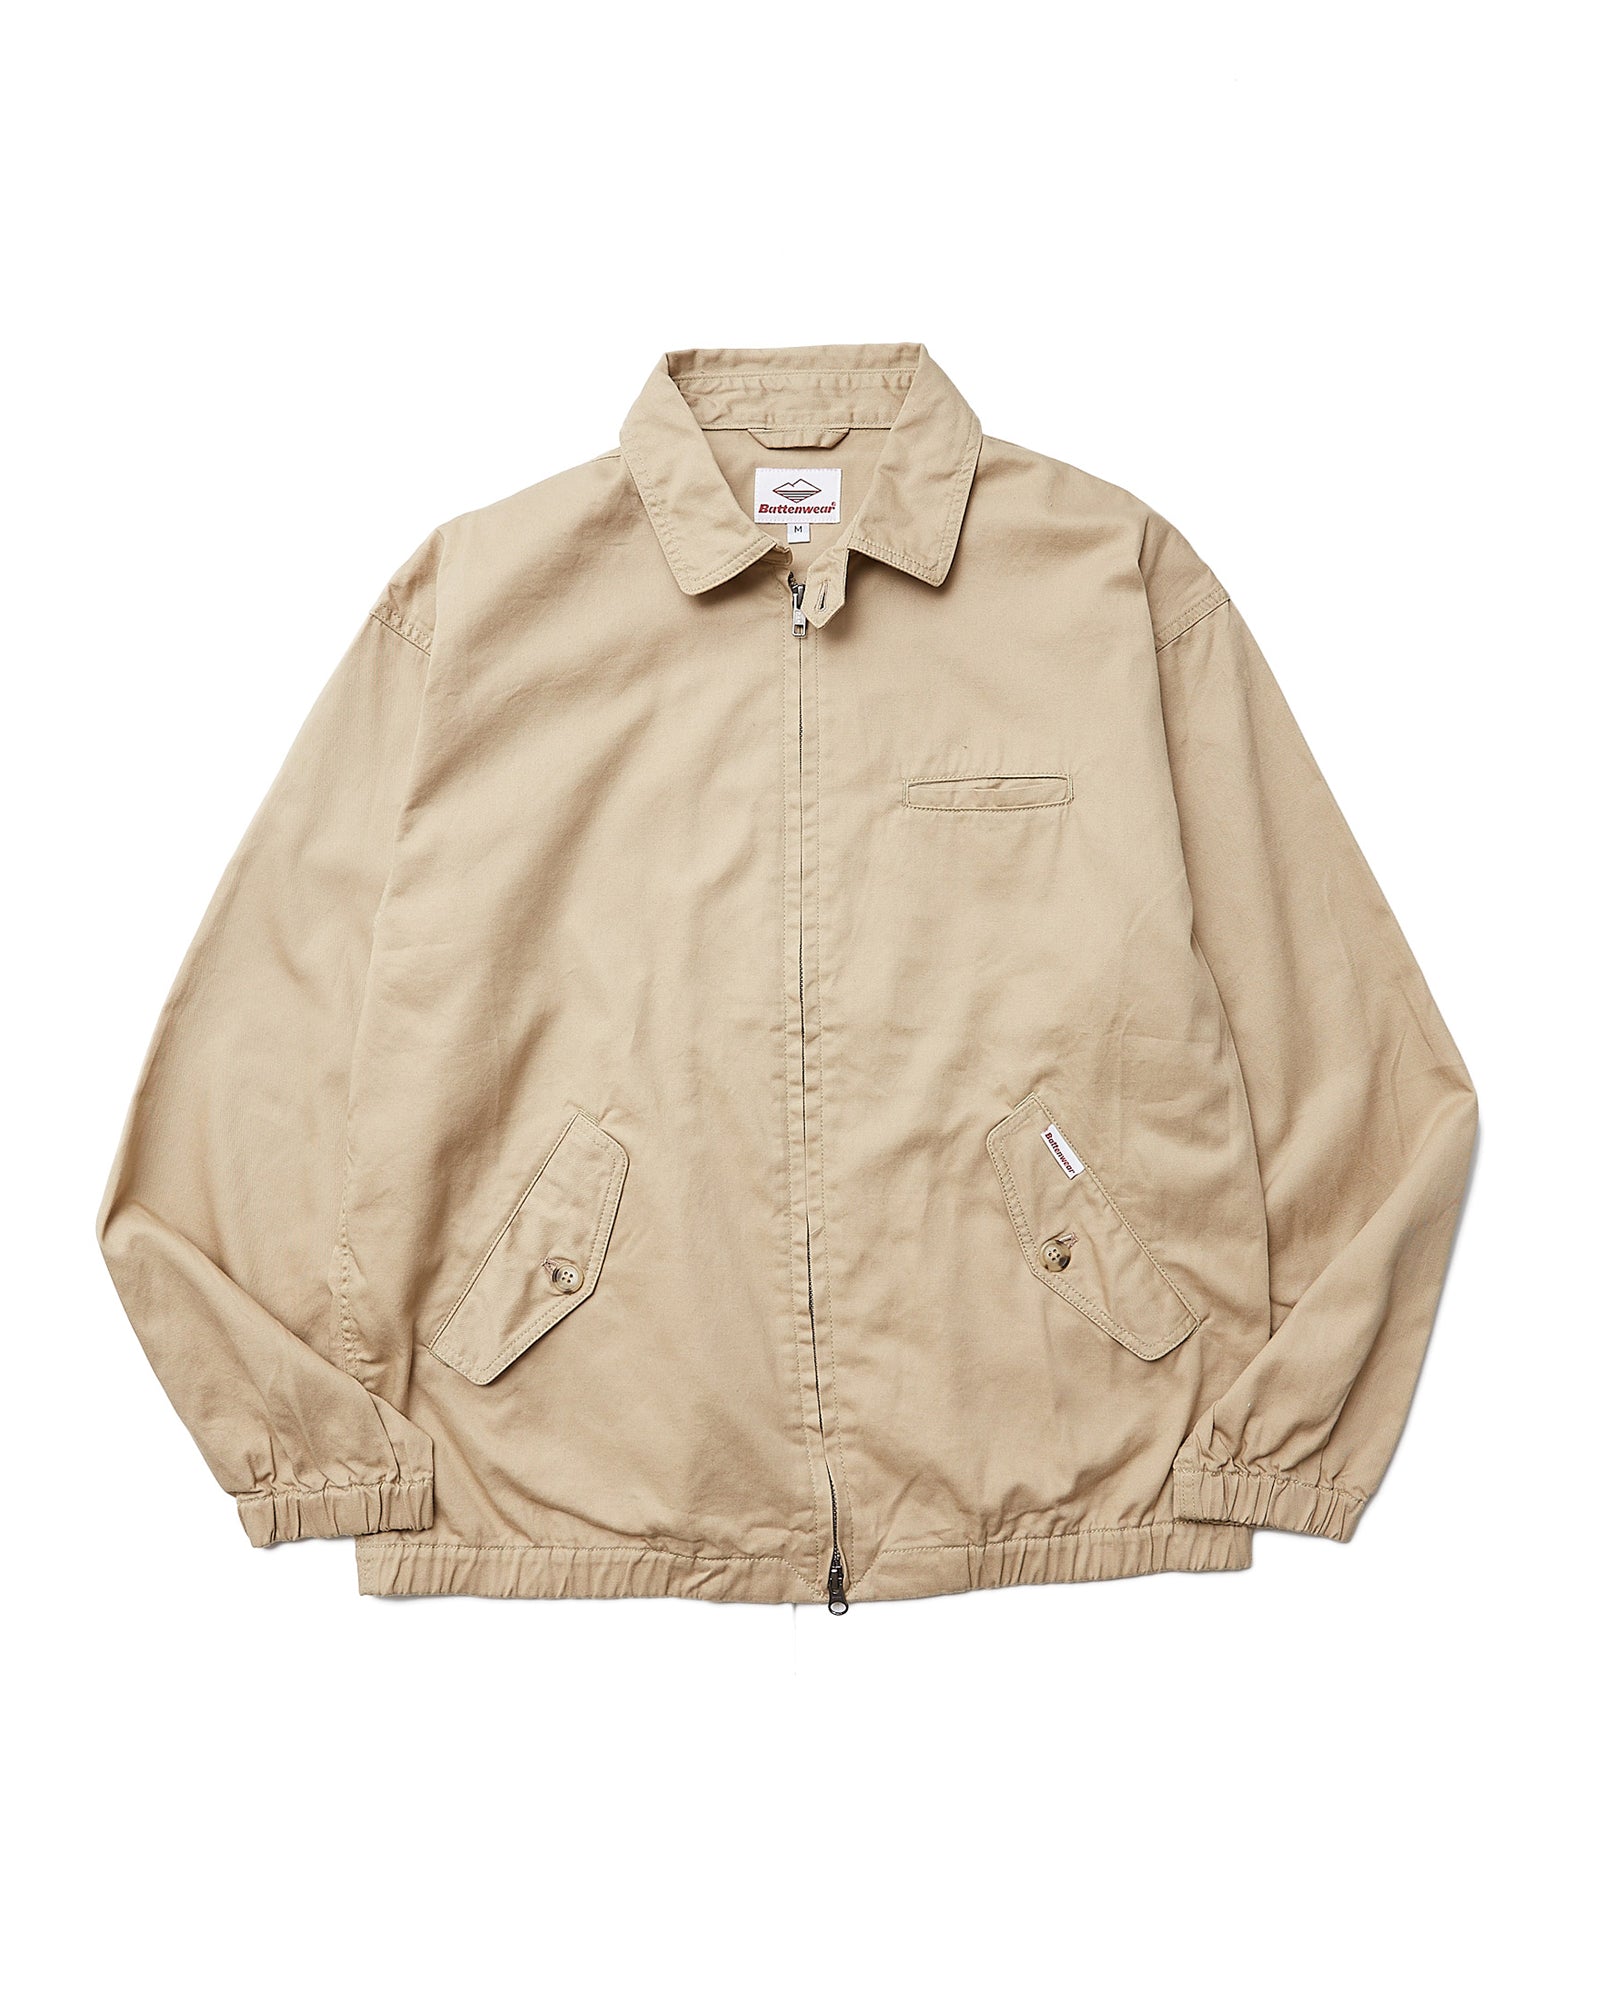 Wander Jacket / Beige – Battenwear